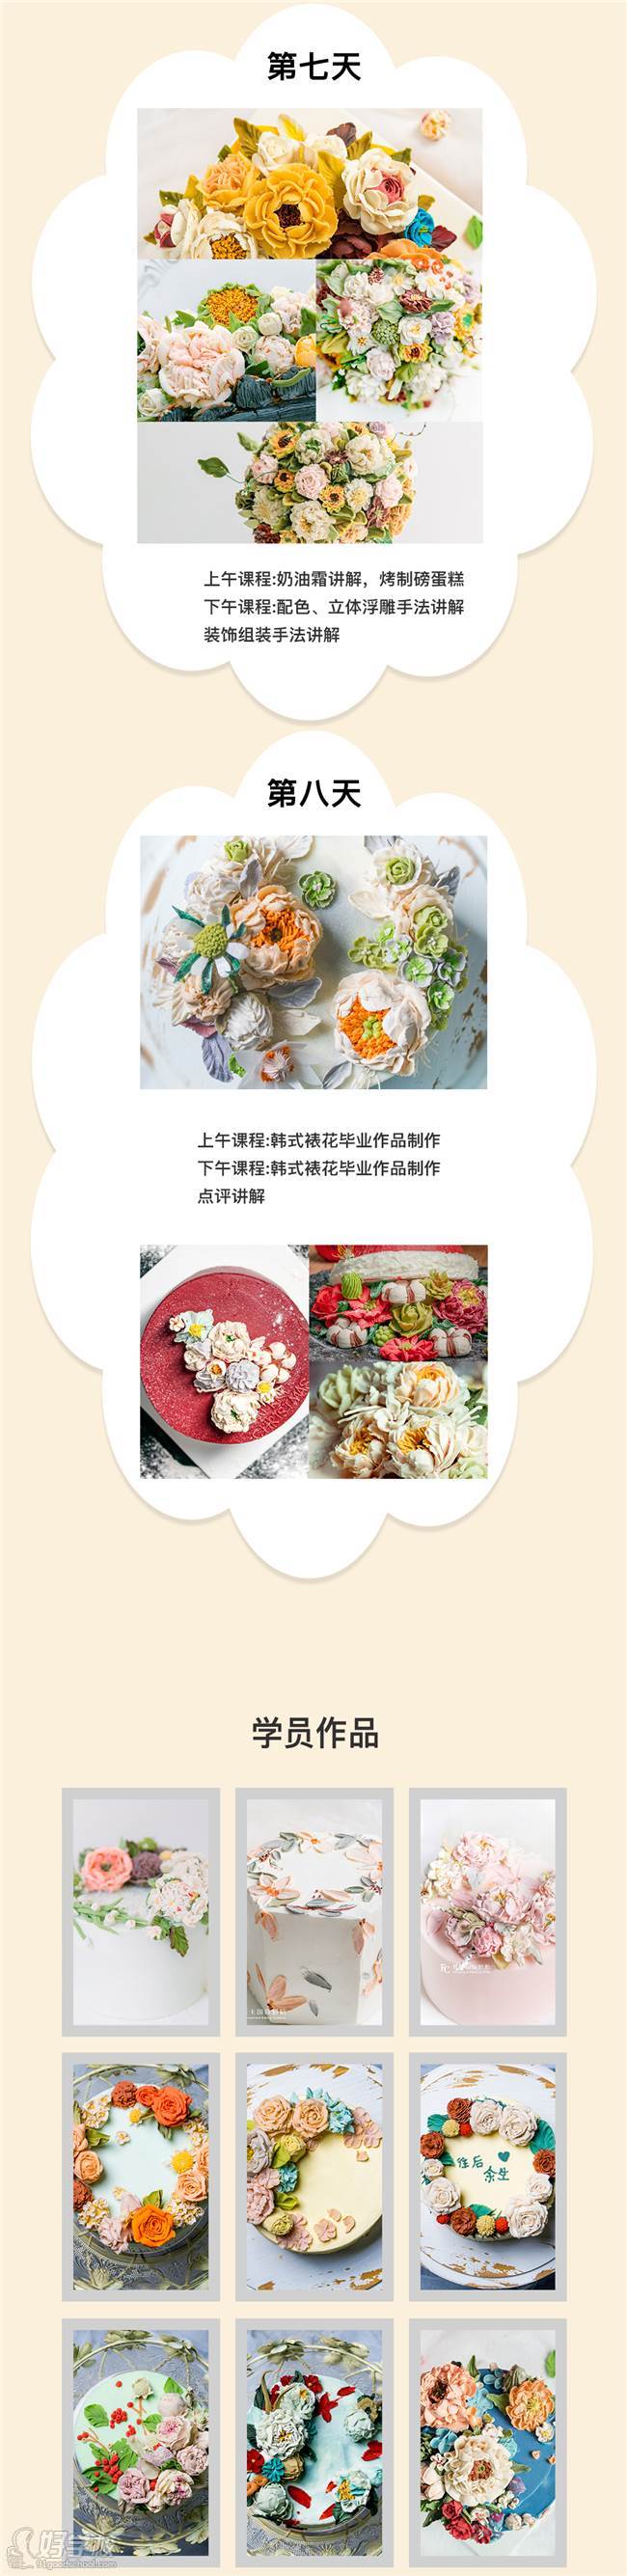 上海梵卡国际烘焙学院 